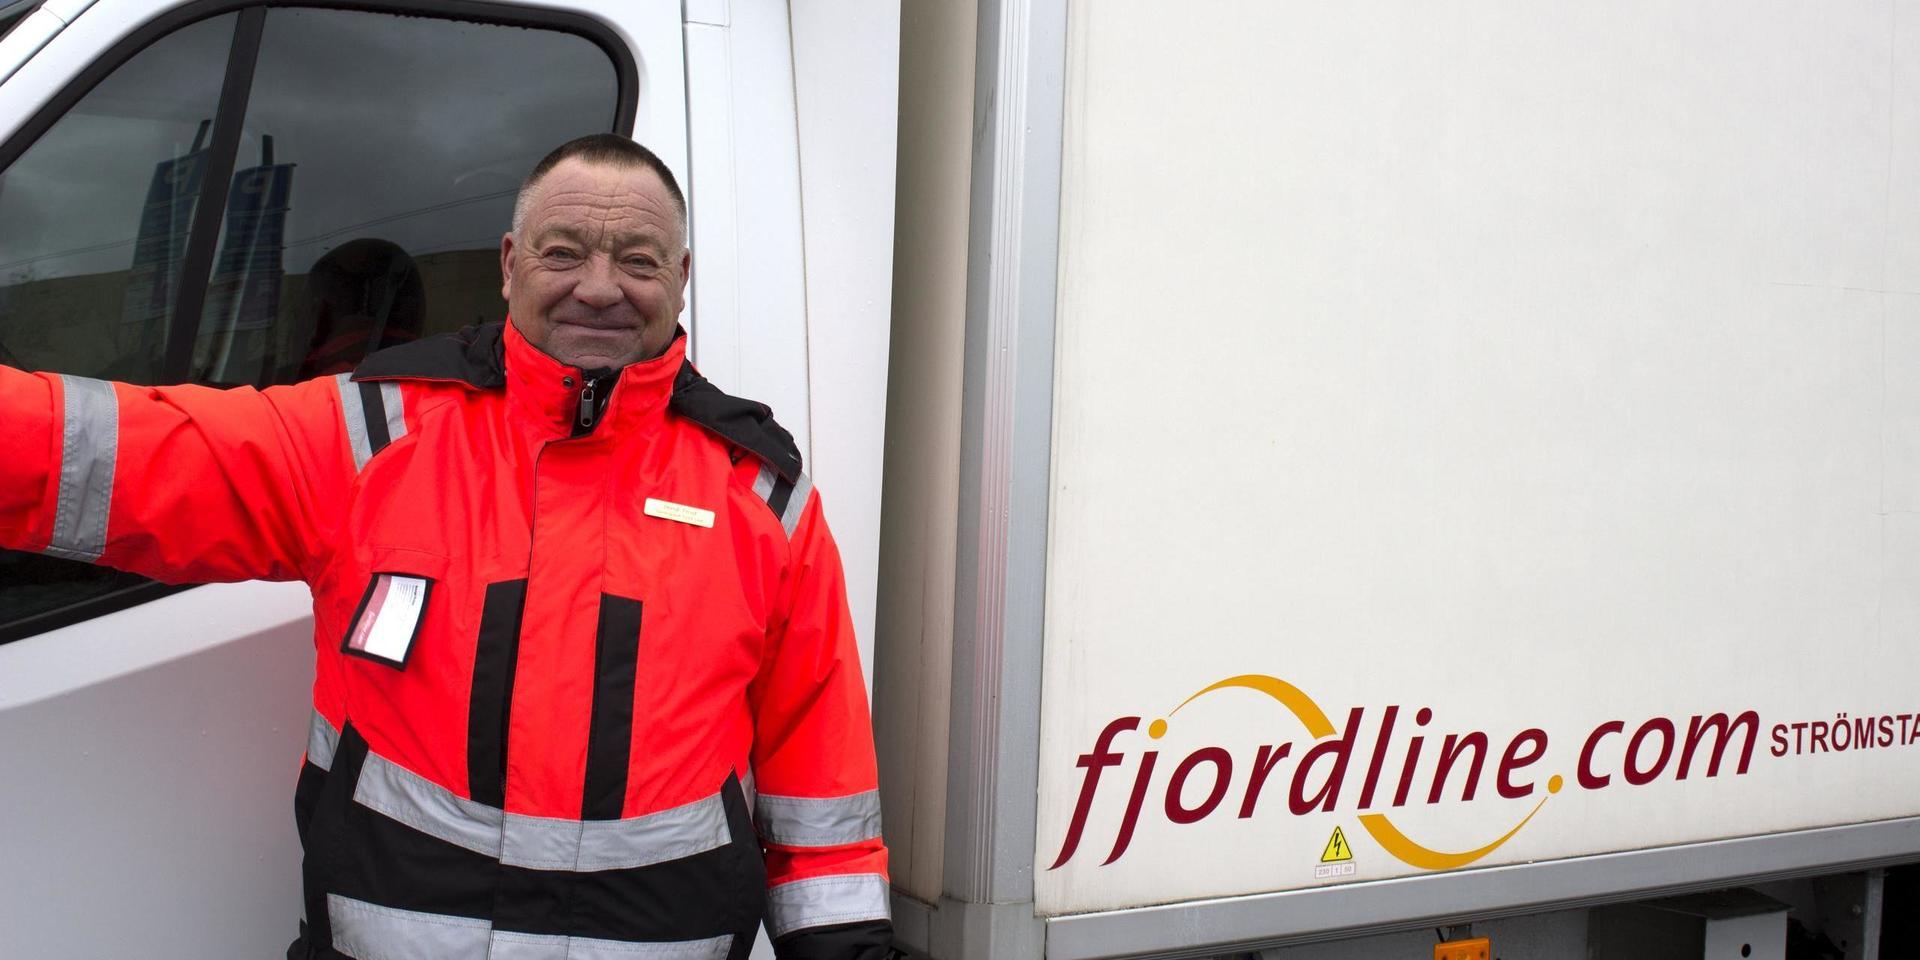 Bengt Fröjd är terminalchef på Fjordline i Strömstad och gör sin sista dag 14 januari. Hur det blir med eventuella återanställningar är oklart i nuläget. 